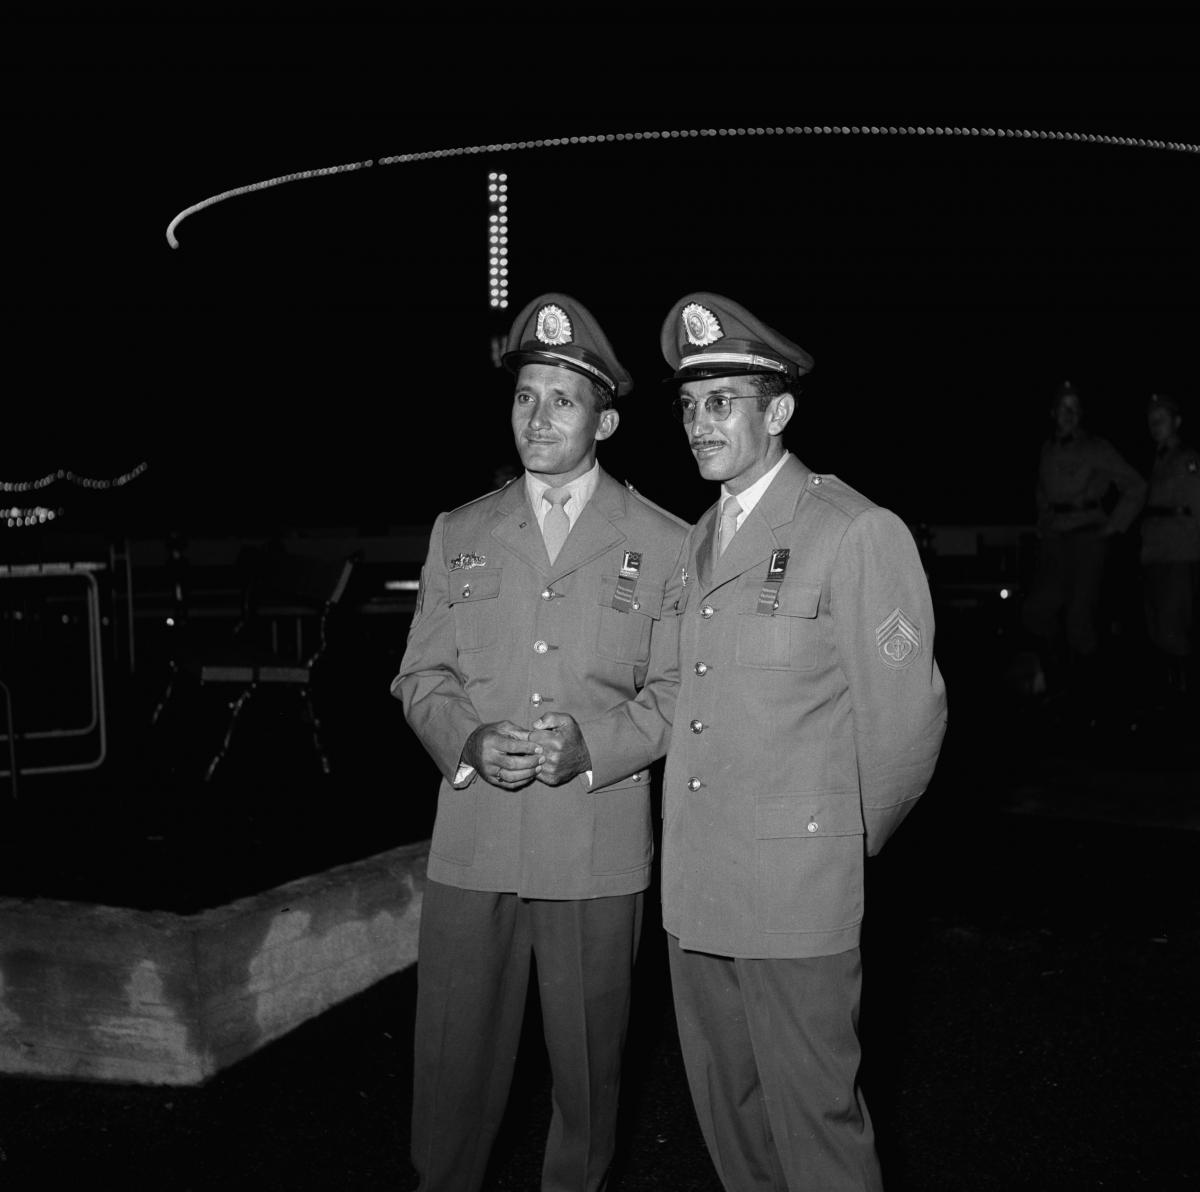 Två OS-gäster klädda i uniform och uniformsmössa fotograferade i nöjesparken på Borgbacken.